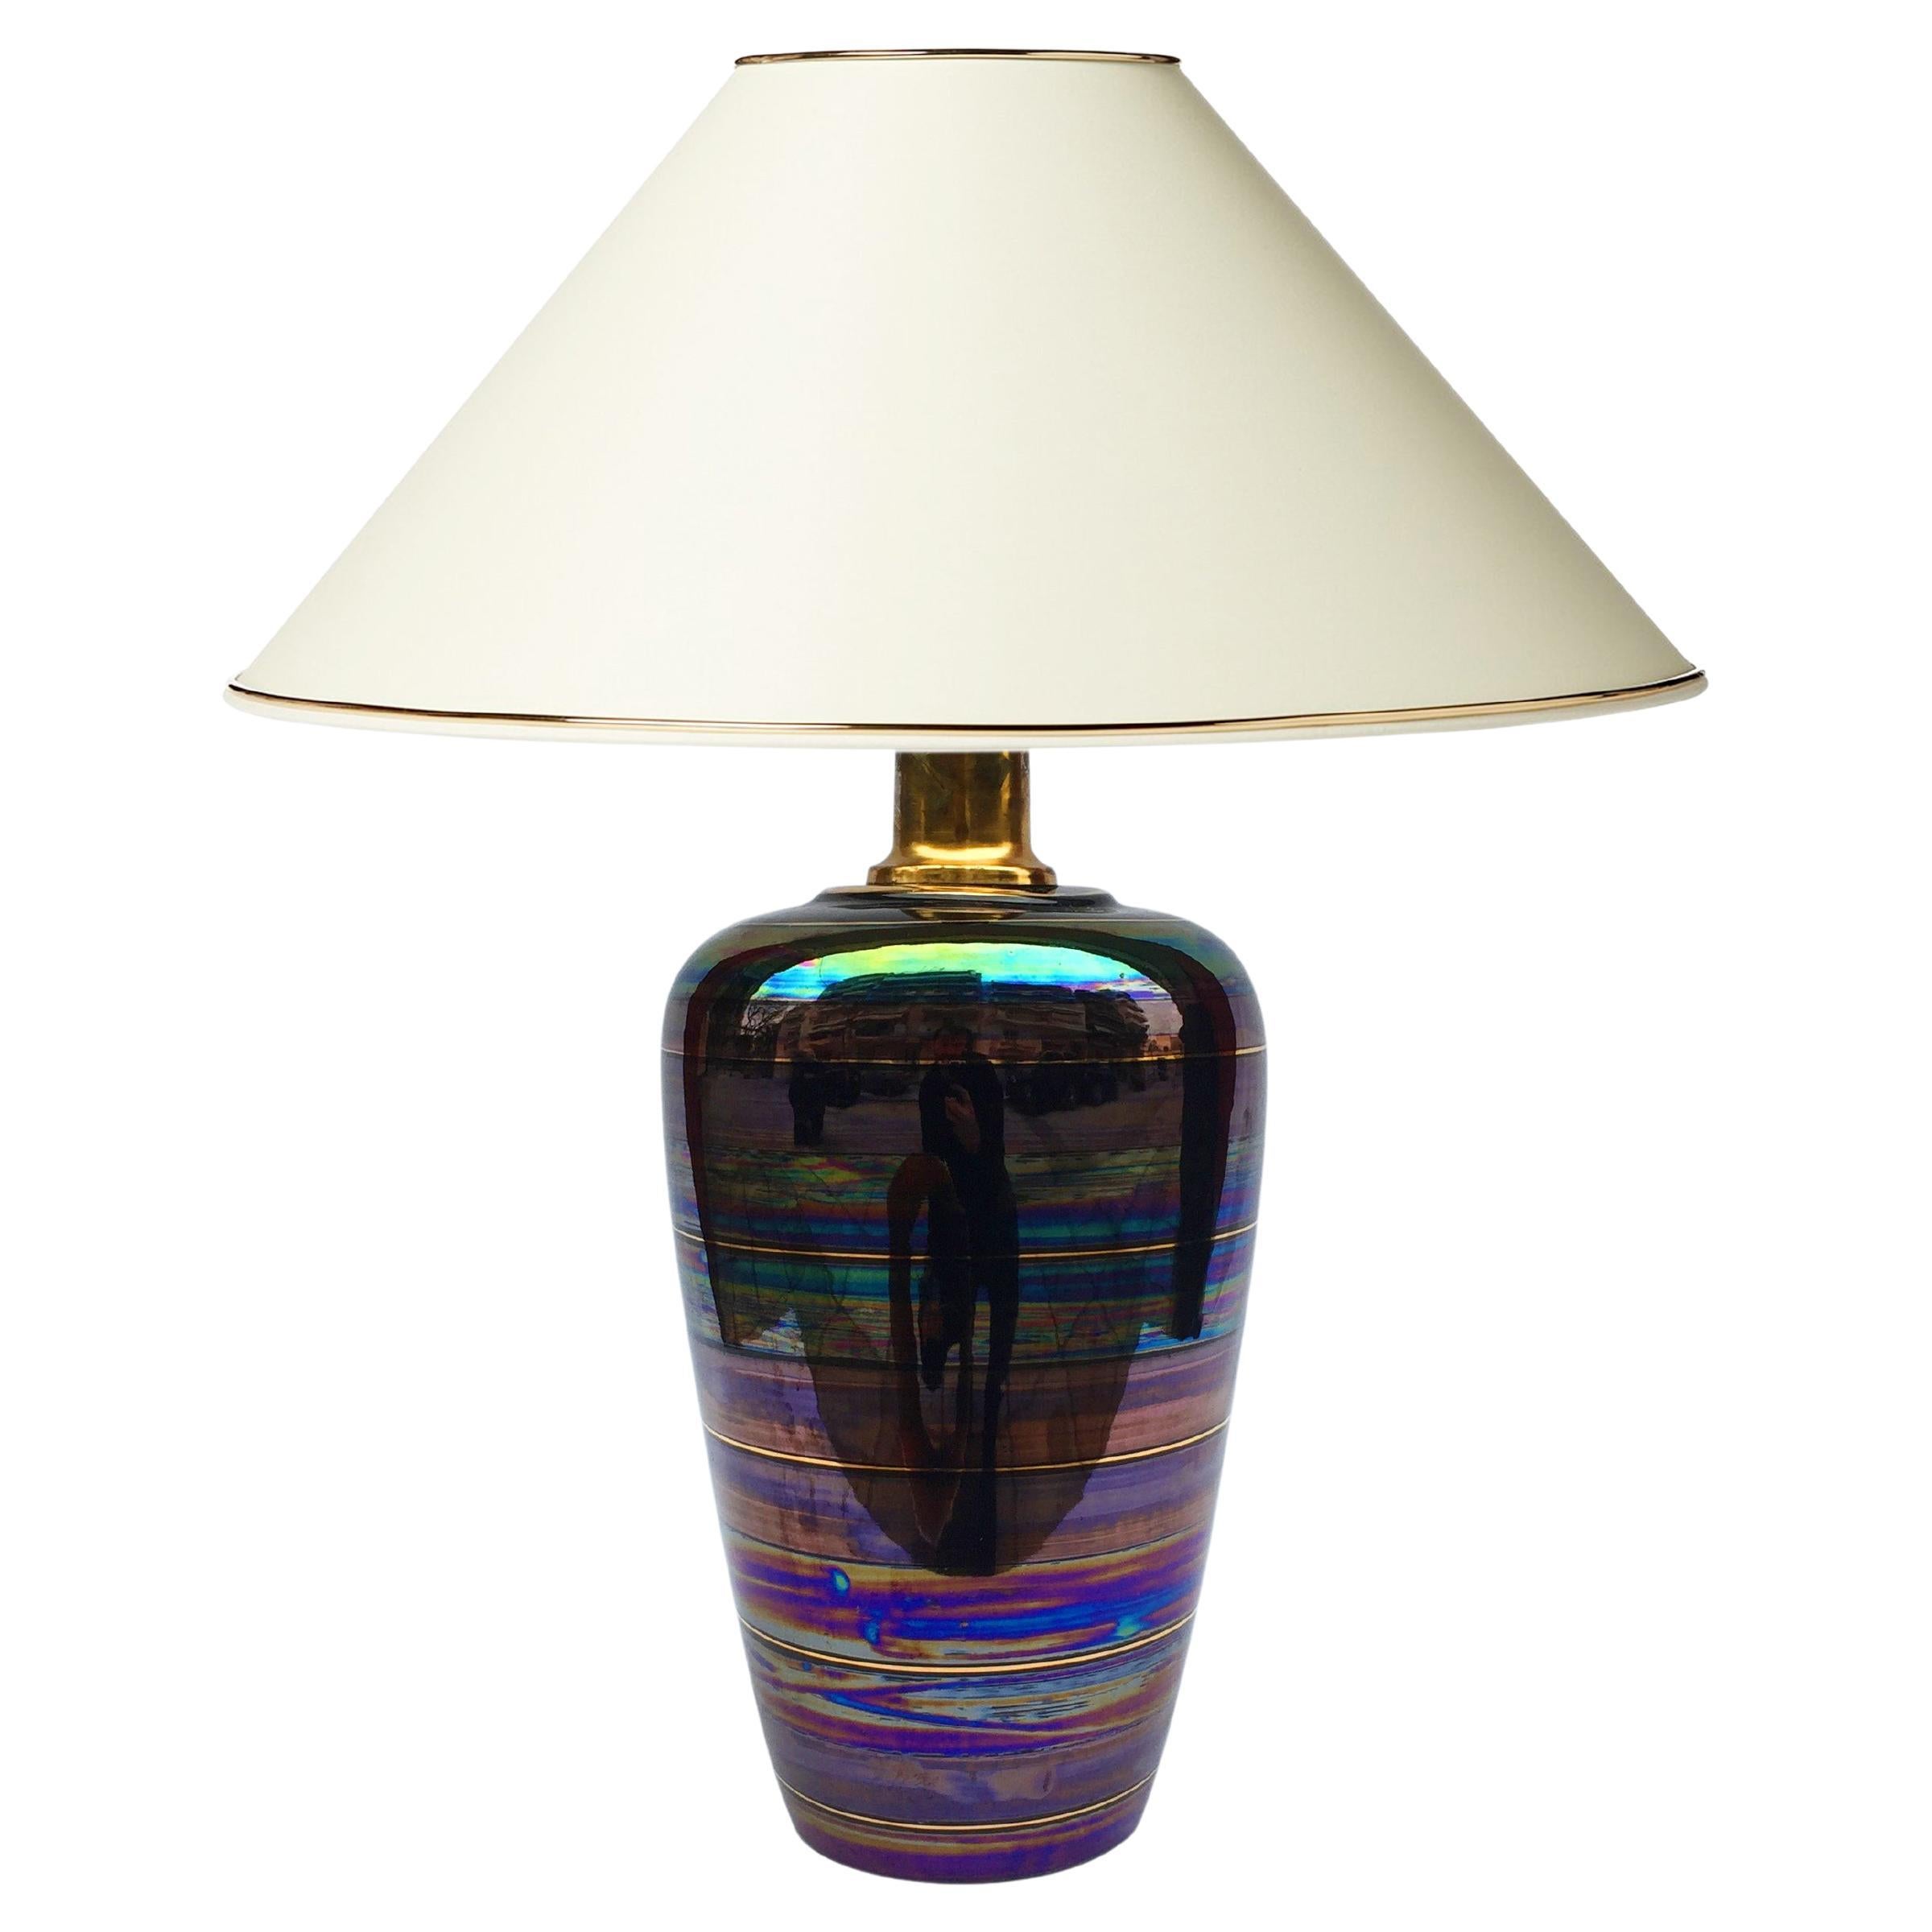 Lampe de bureau en céramique irisée des années 1970, style Art nouveau, à la manière de Johann Loetz